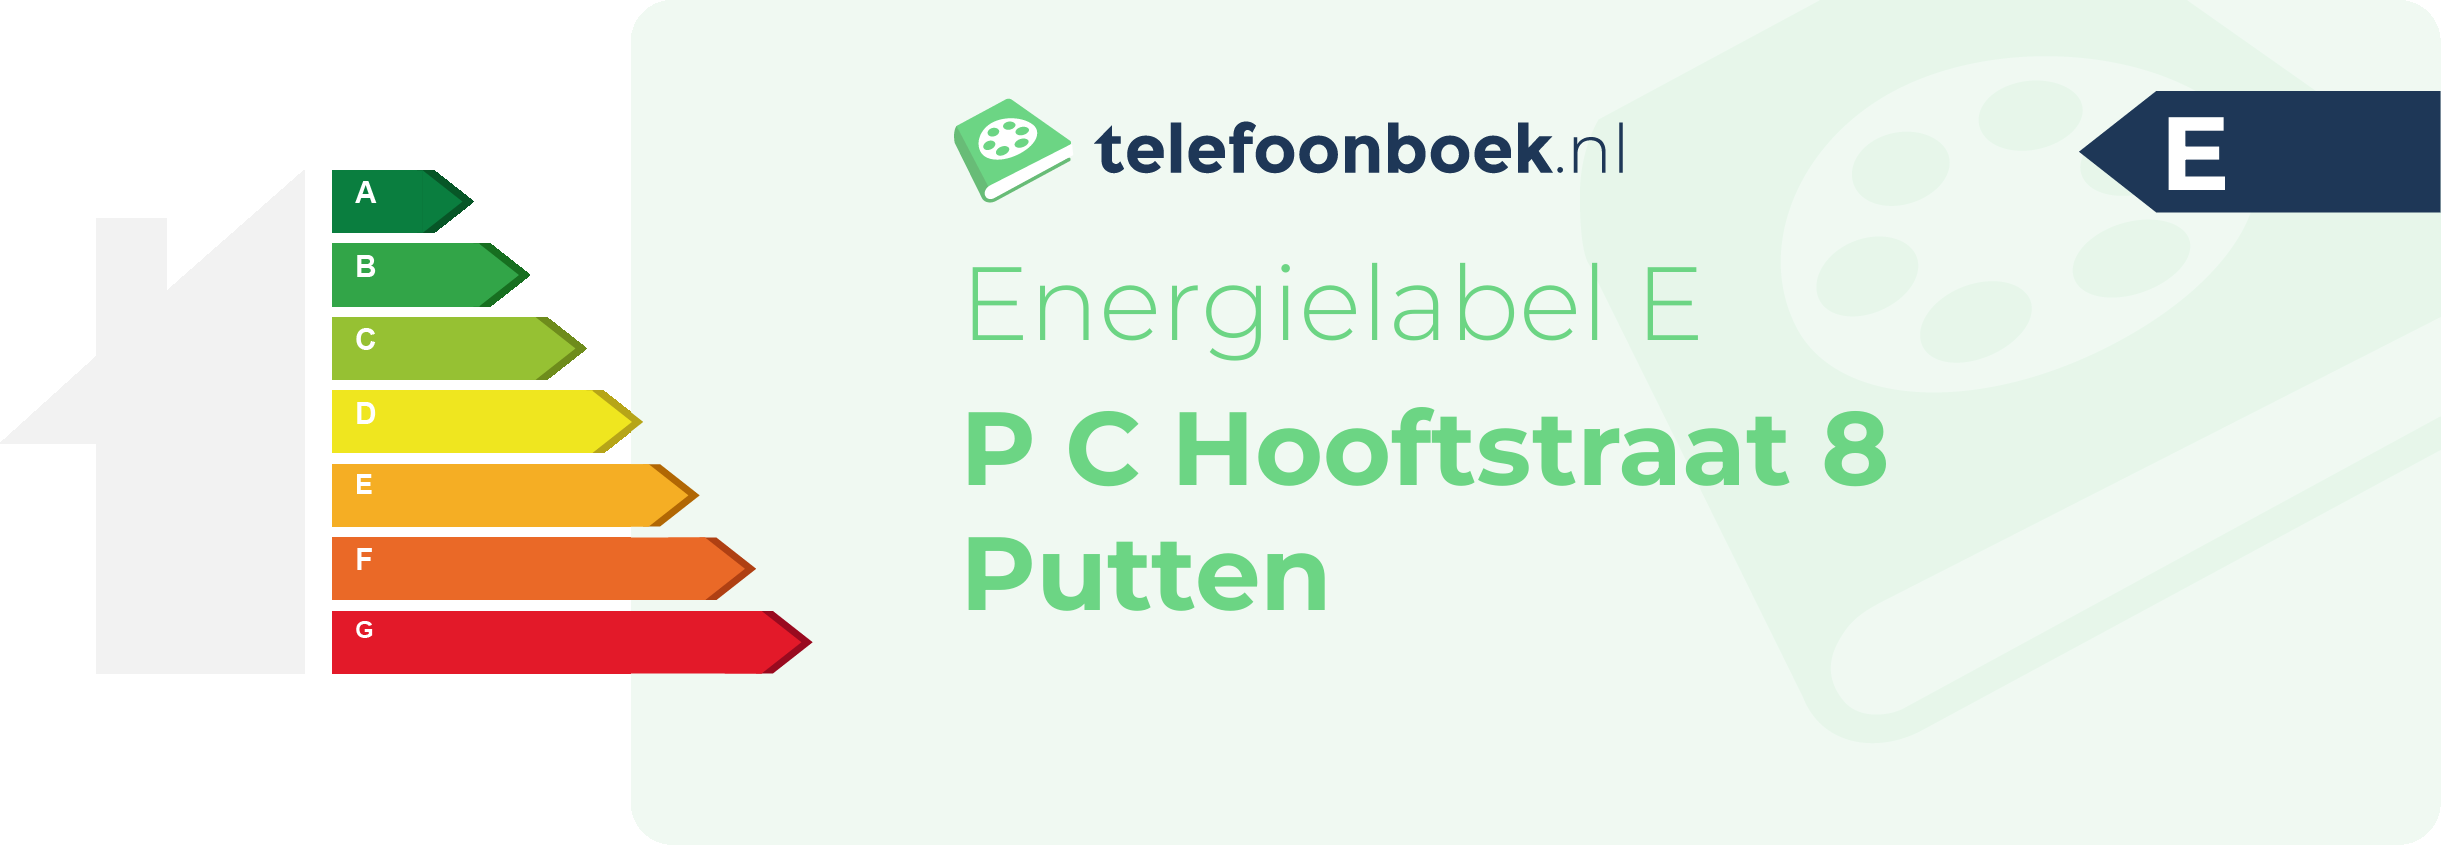 Energielabel P C Hooftstraat 8 Putten